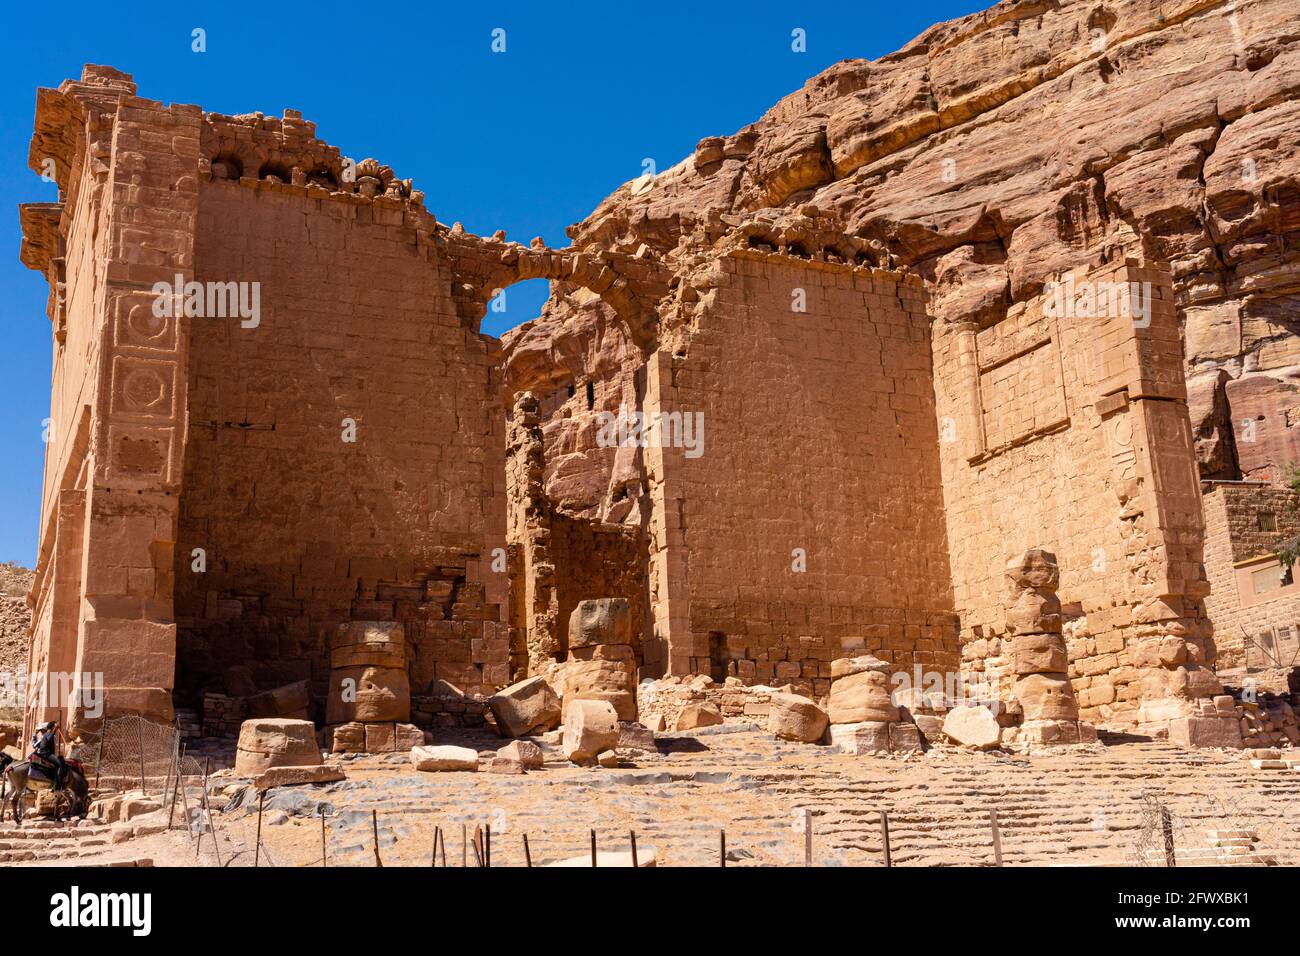 El frente de Qasral-Bint Far'un, Castillo de la hija del Faraón, monumento independiente, templo principal de la antigua cultura nabatea en Petra, Jordania Foto de stock